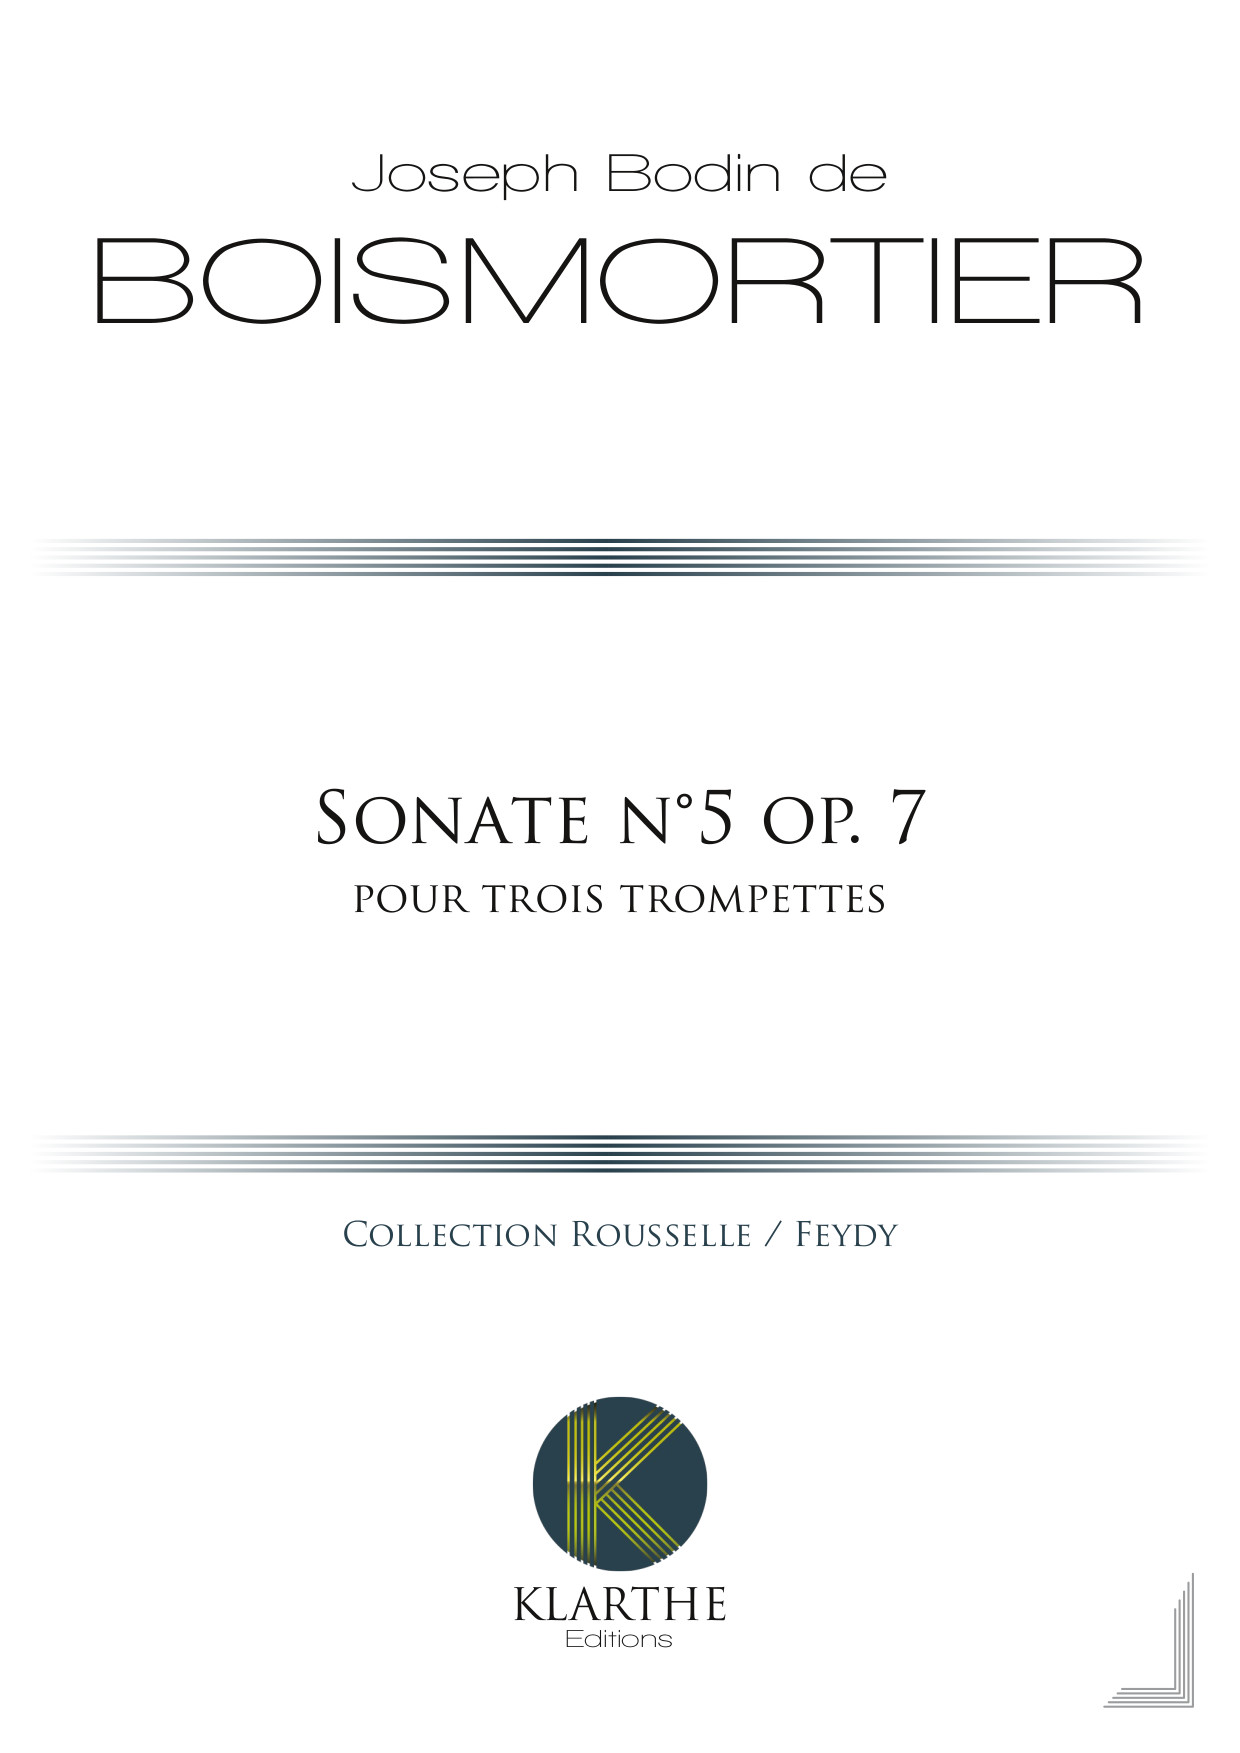 Sonate n�5 op.7
(BOISMORTIER JOSEPH BODIN DE)